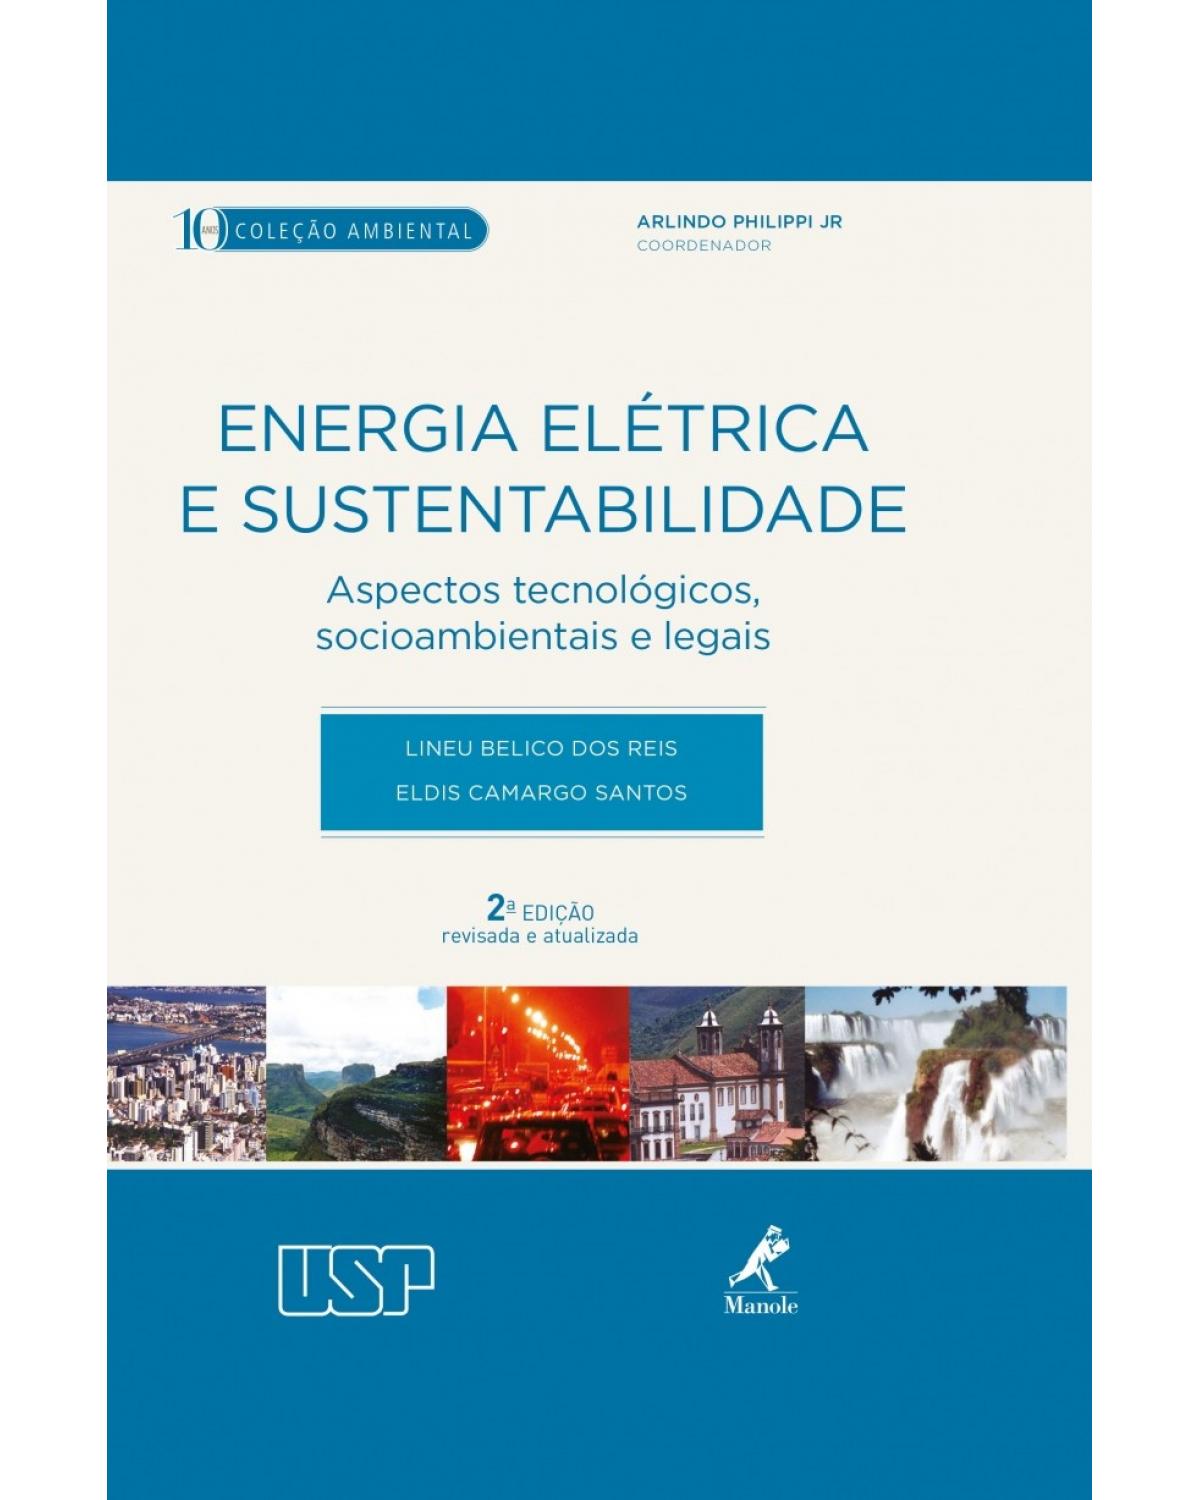 Energia elétrica e sustentabilidade - aspectos tecnológicos, socioambientais e legais - 2ª Edição | 2014